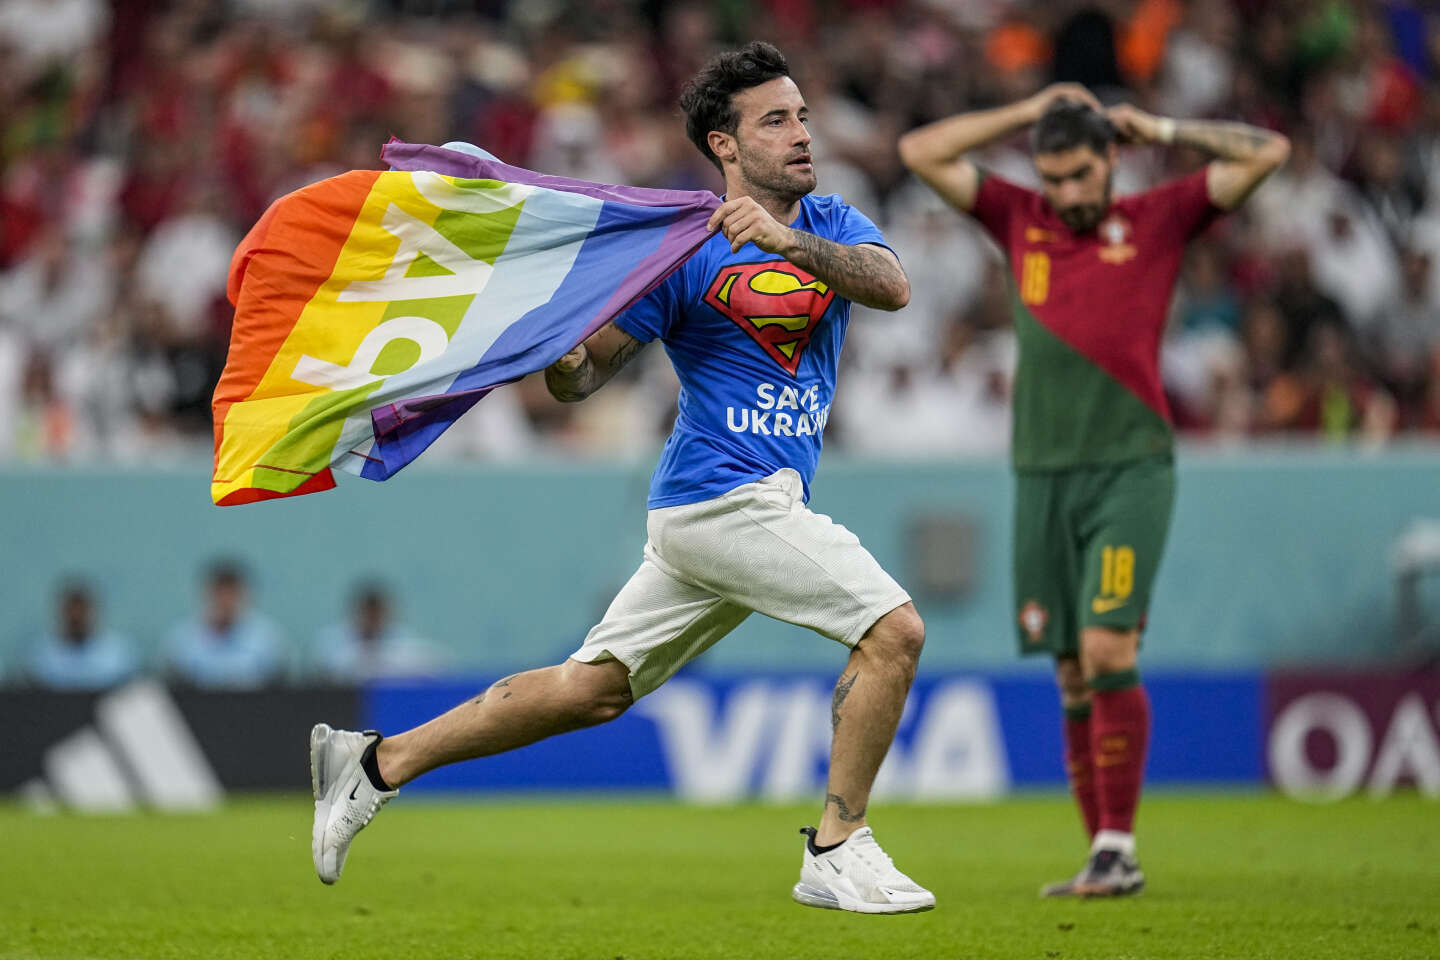 Coupe du monde : un supporteur fait irruption sur la pelouse pour brandir le drapeau LGBT lors du match Portugal-Uruguay